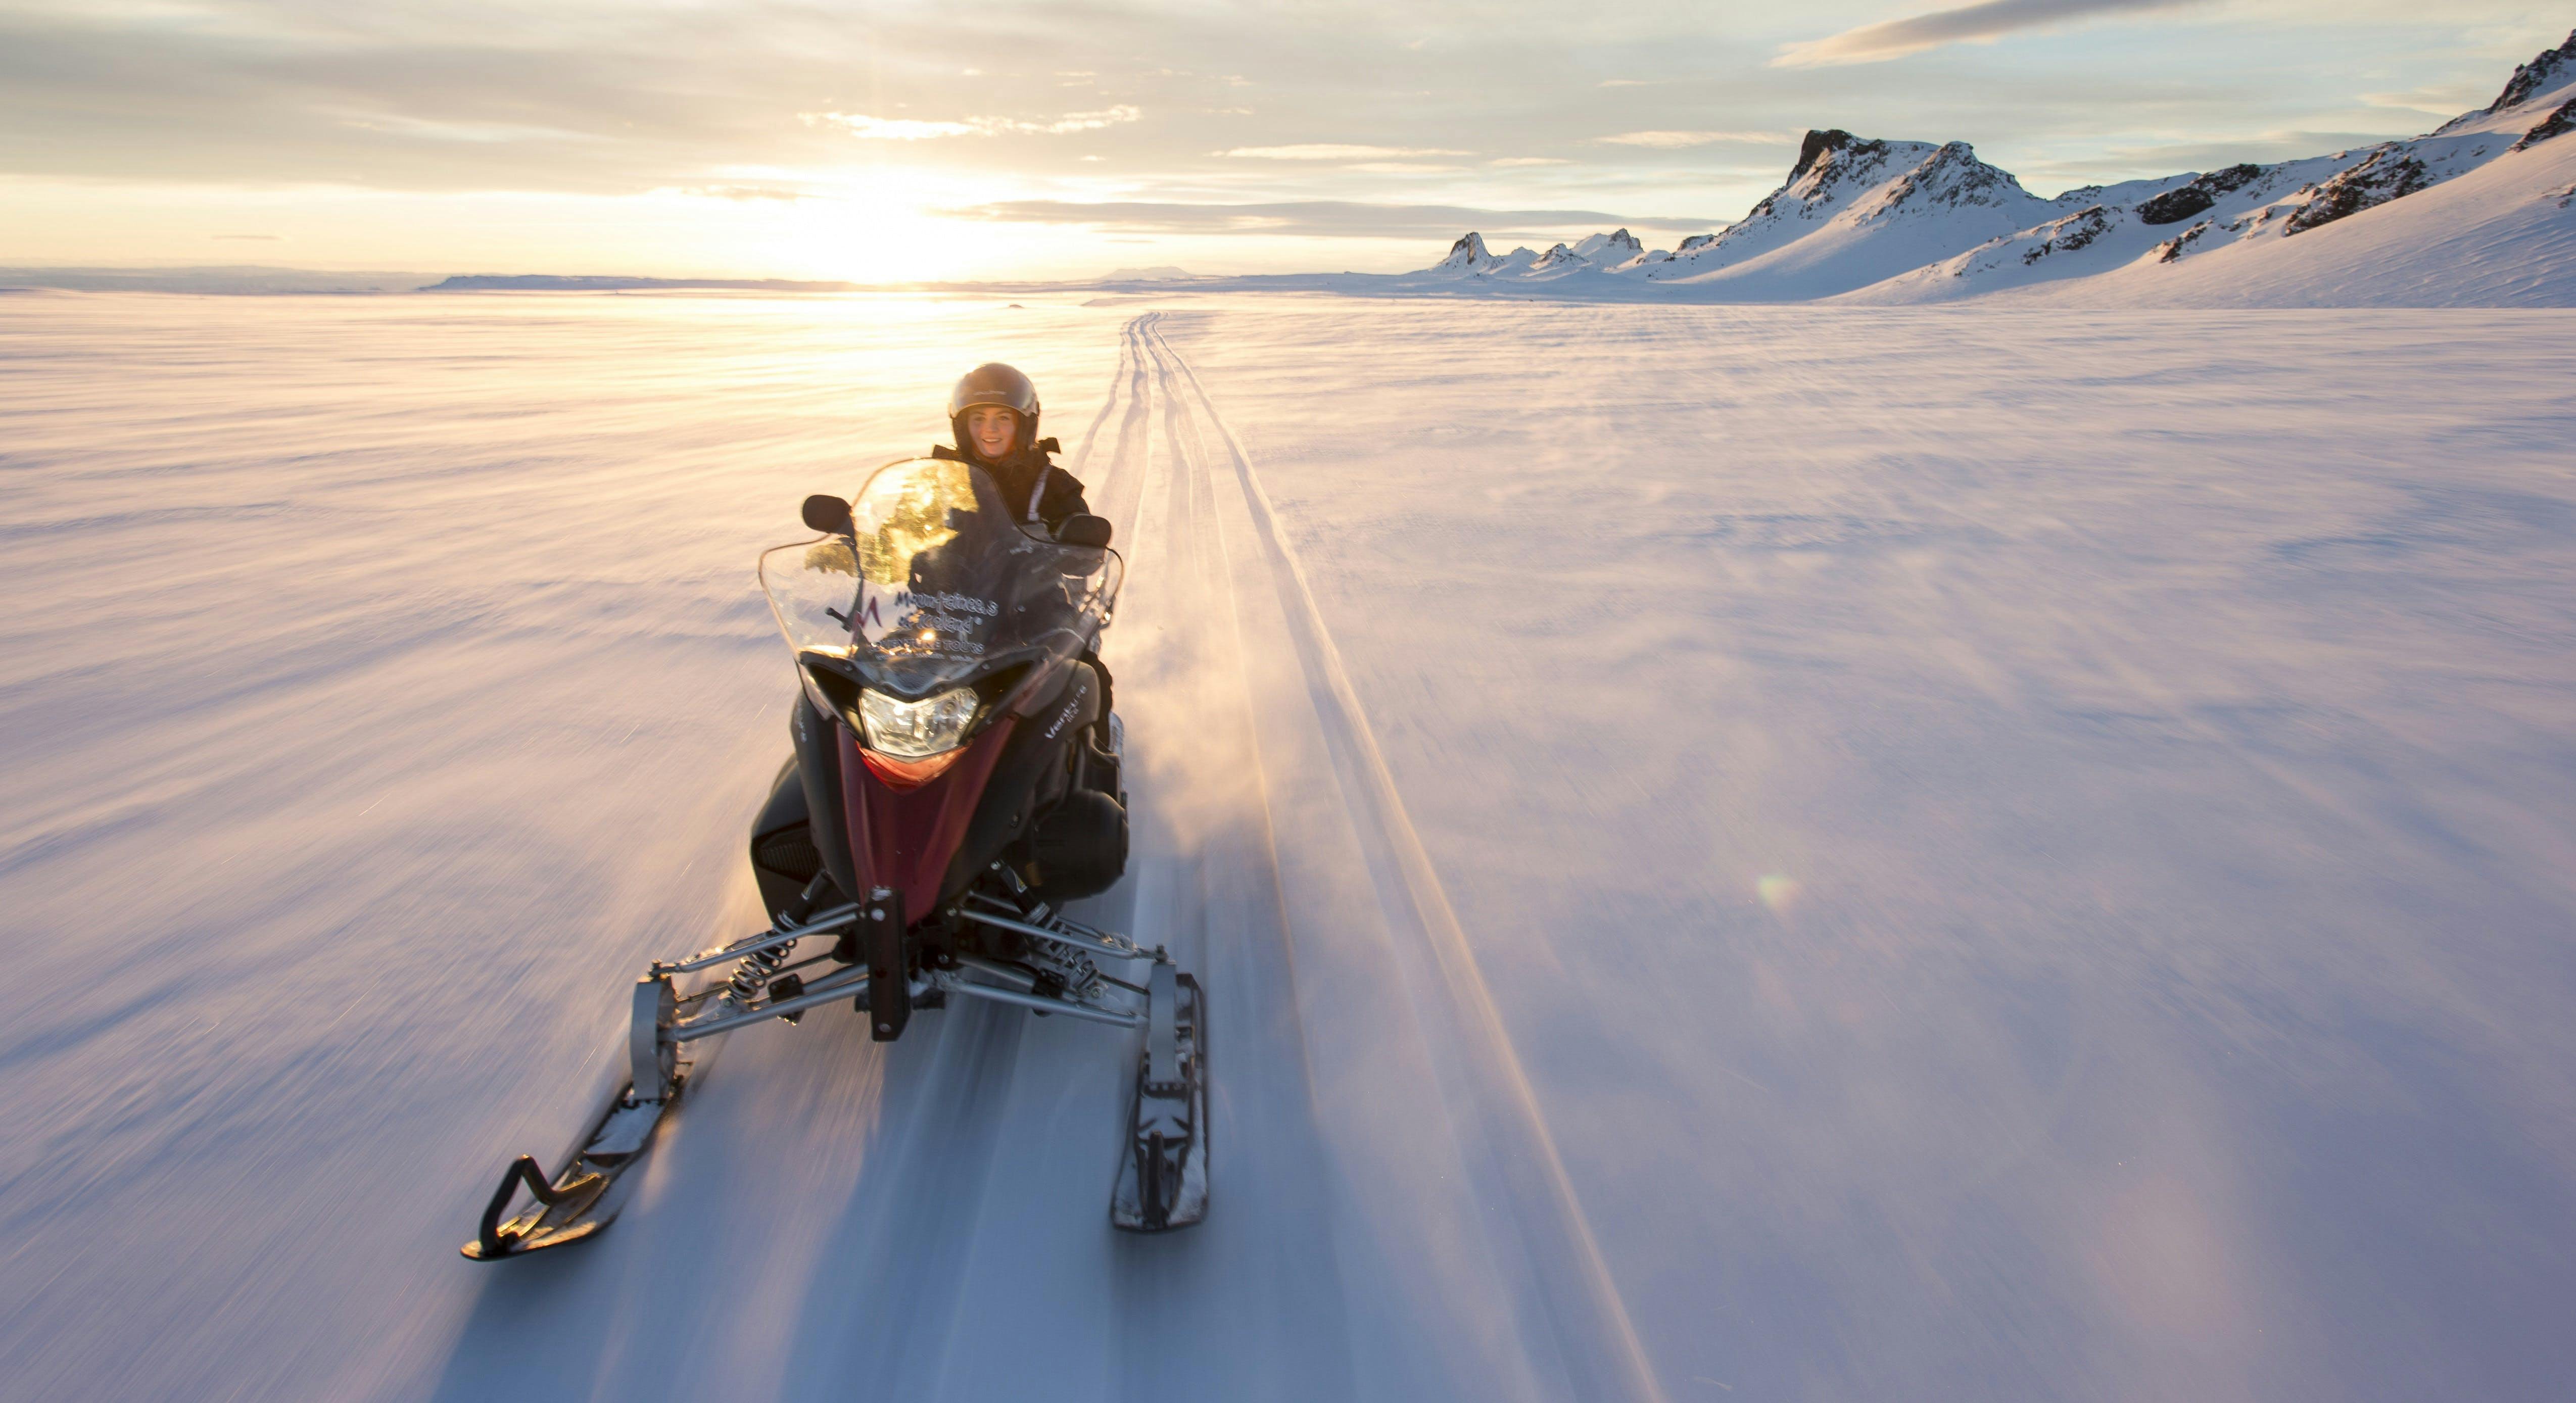 在冰岛古老的冰川上体验雪地摩托的刺激与乐趣。